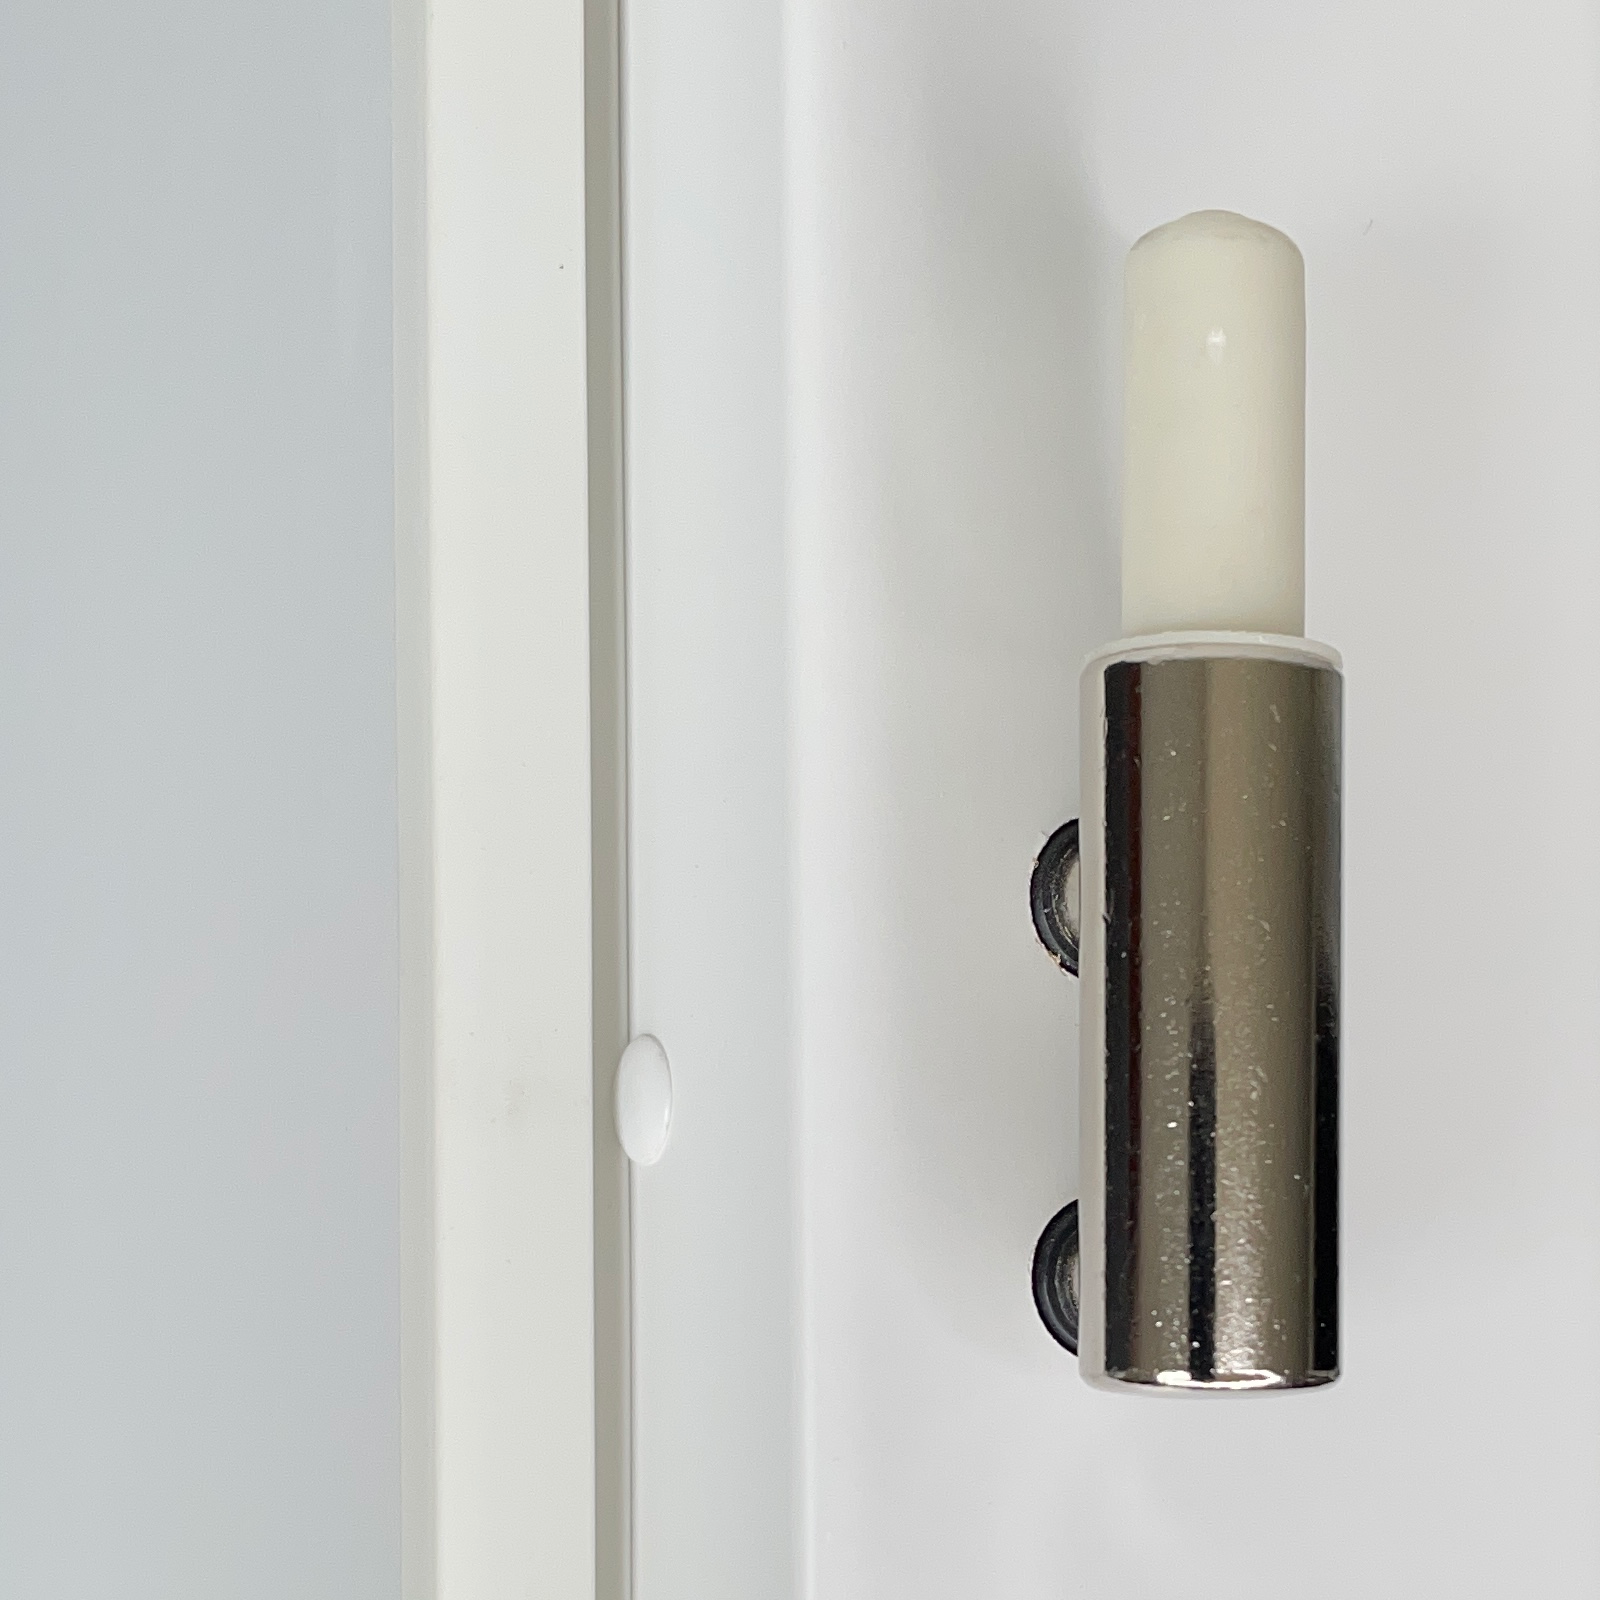 Zimmertür mit Zarge und Lichtausschnitt brillant-weiß 2 Rillen quer Designkante - Modell Designtür Q23LAB